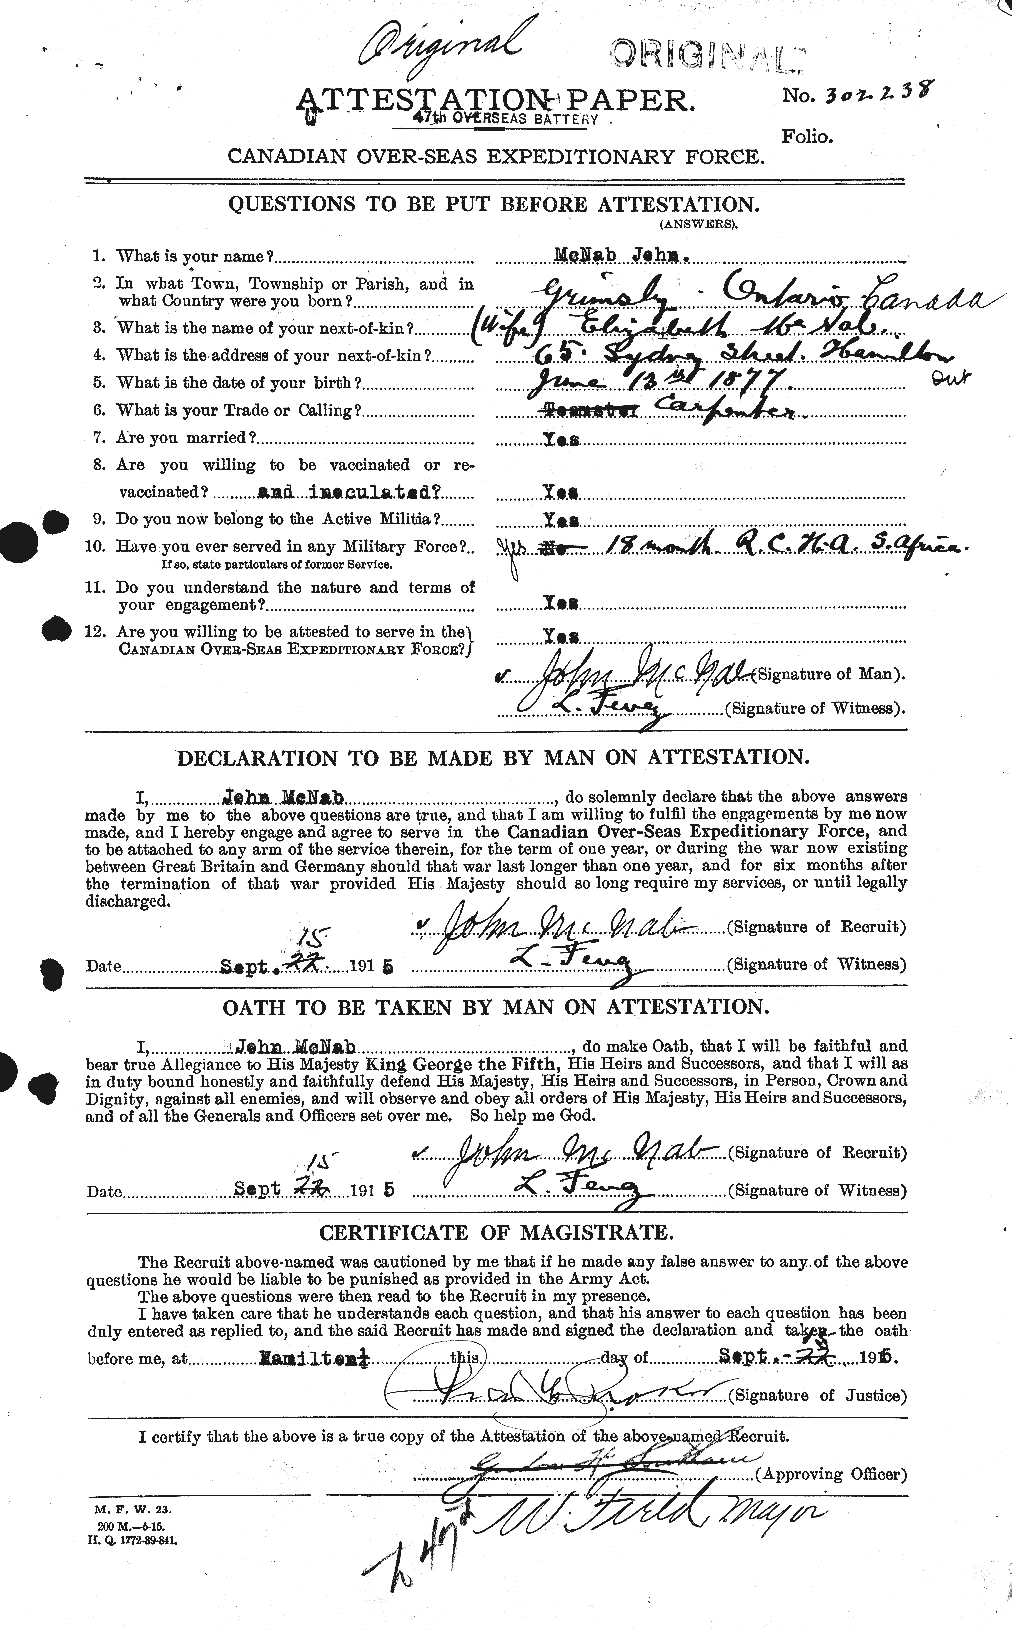 Dossiers du Personnel de la Première Guerre mondiale - CEC 539567a